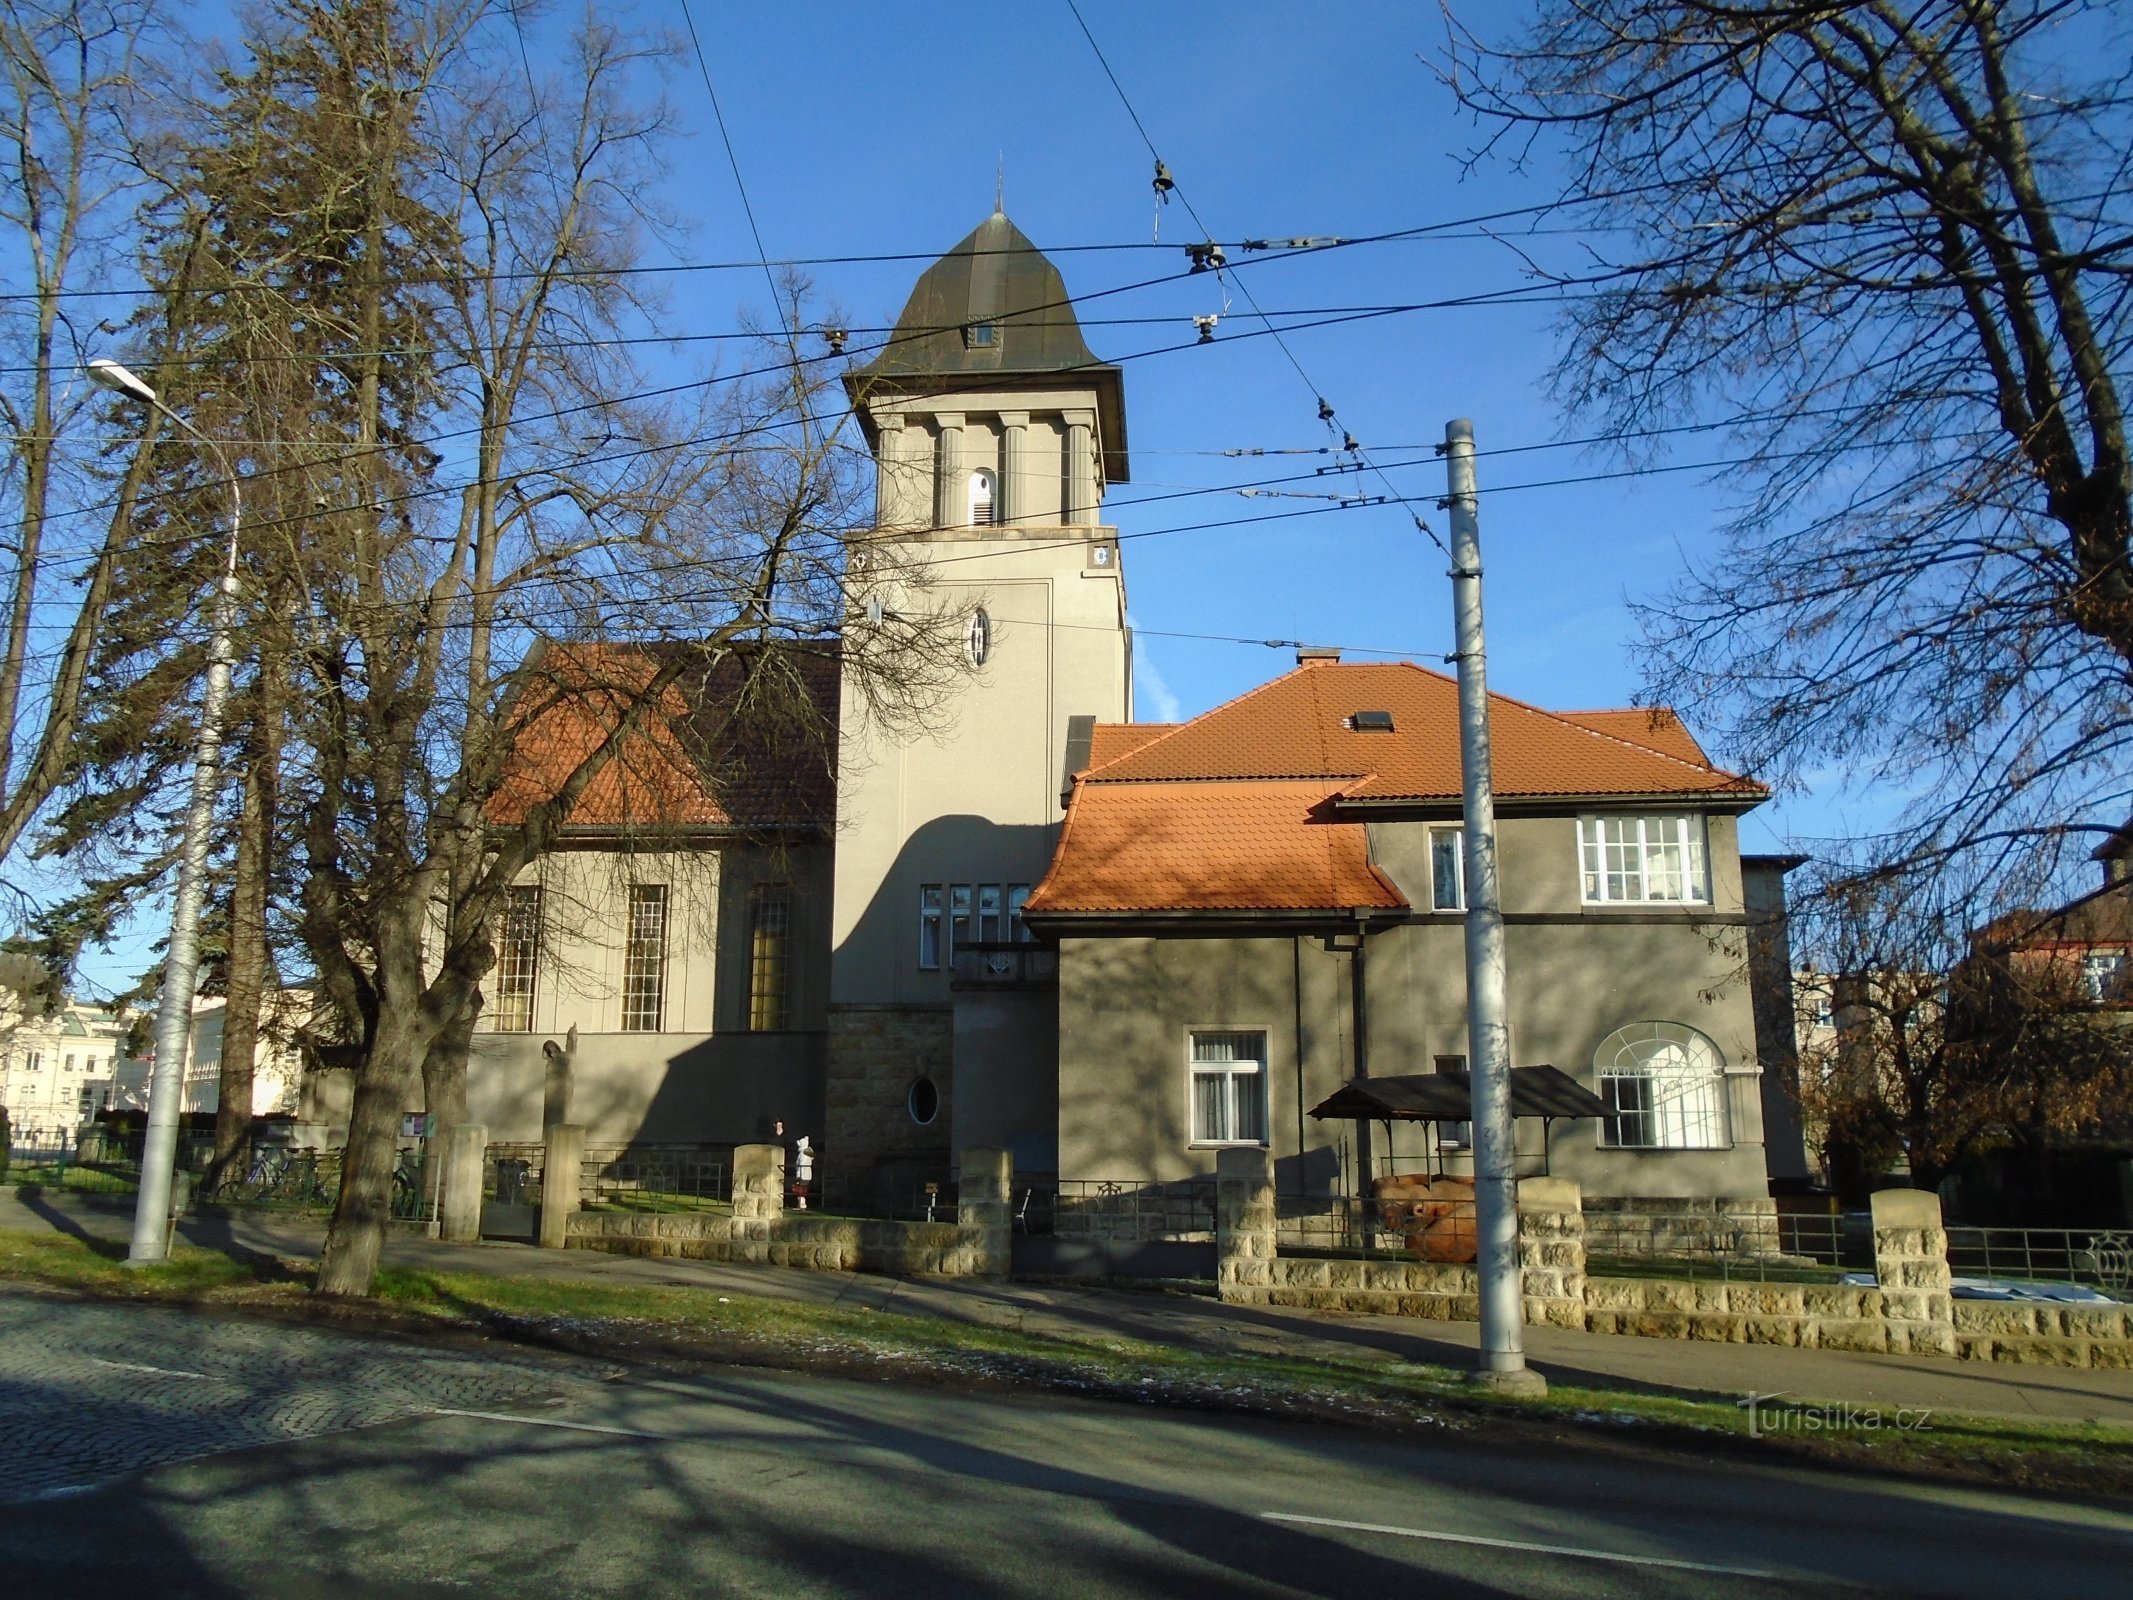 Evangeličanska cerkev z župniščem (Hradec Králové, 10.12.2017. XNUMX. XNUMX)